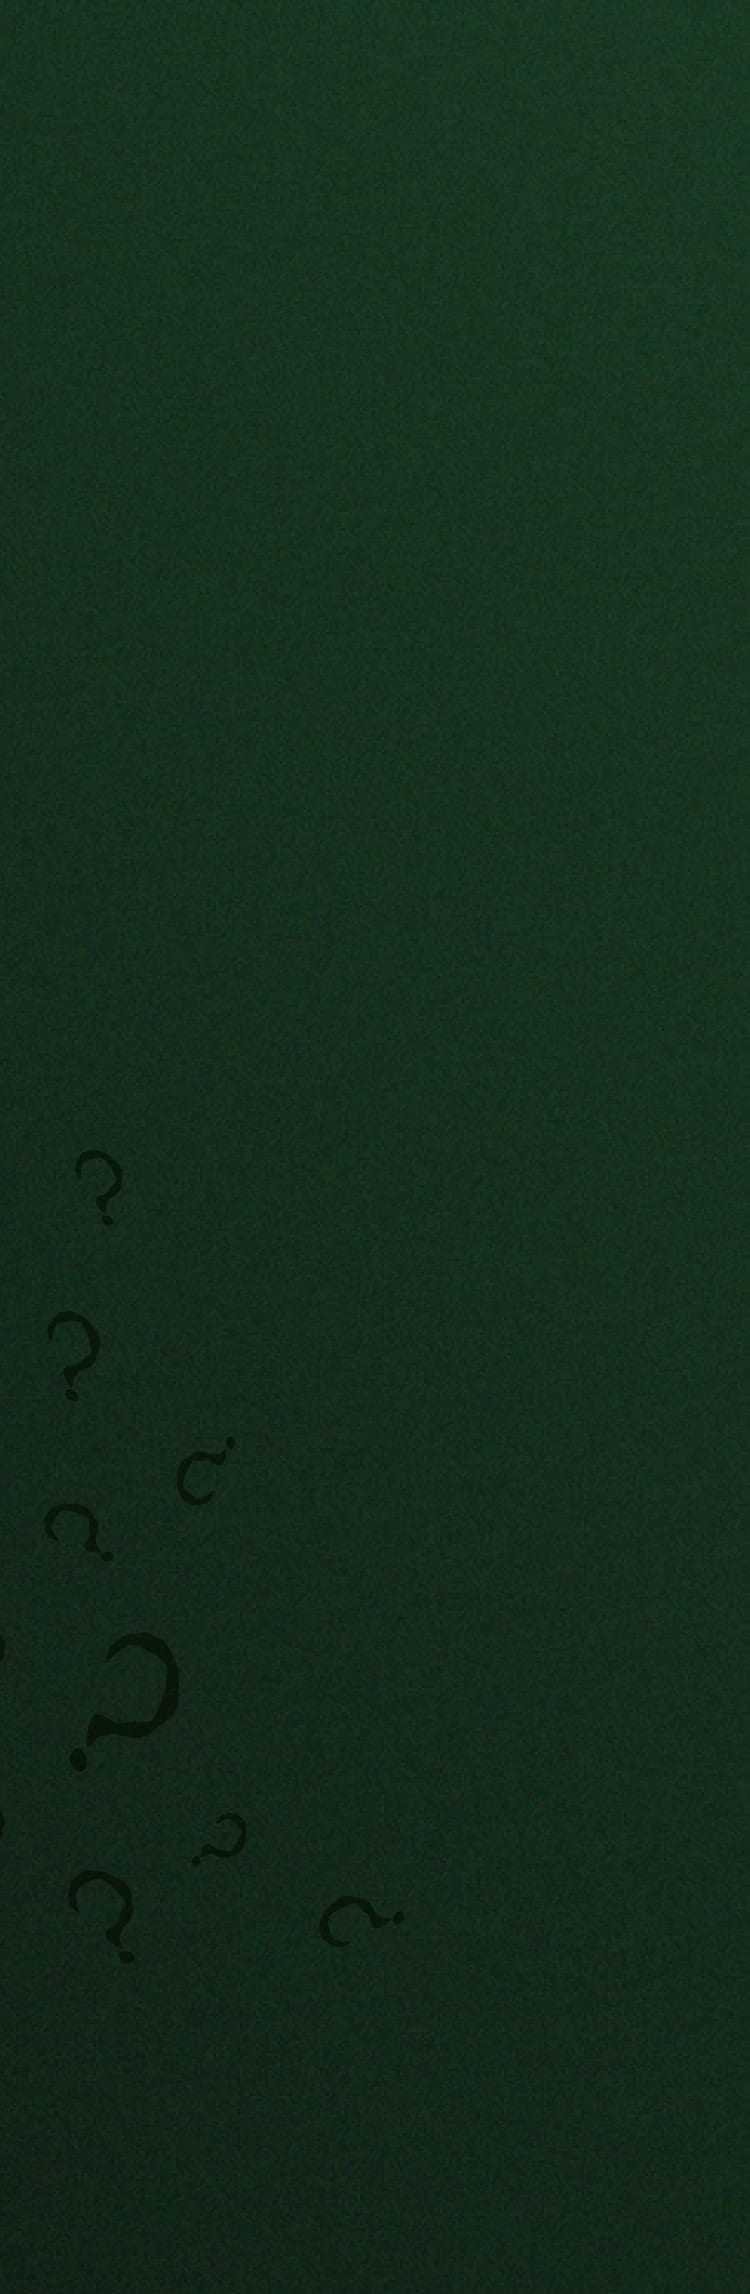 Un arrière-plan vert avec des points d’interrogation décoratifs et la montre Riddler Batman x Fossil. 